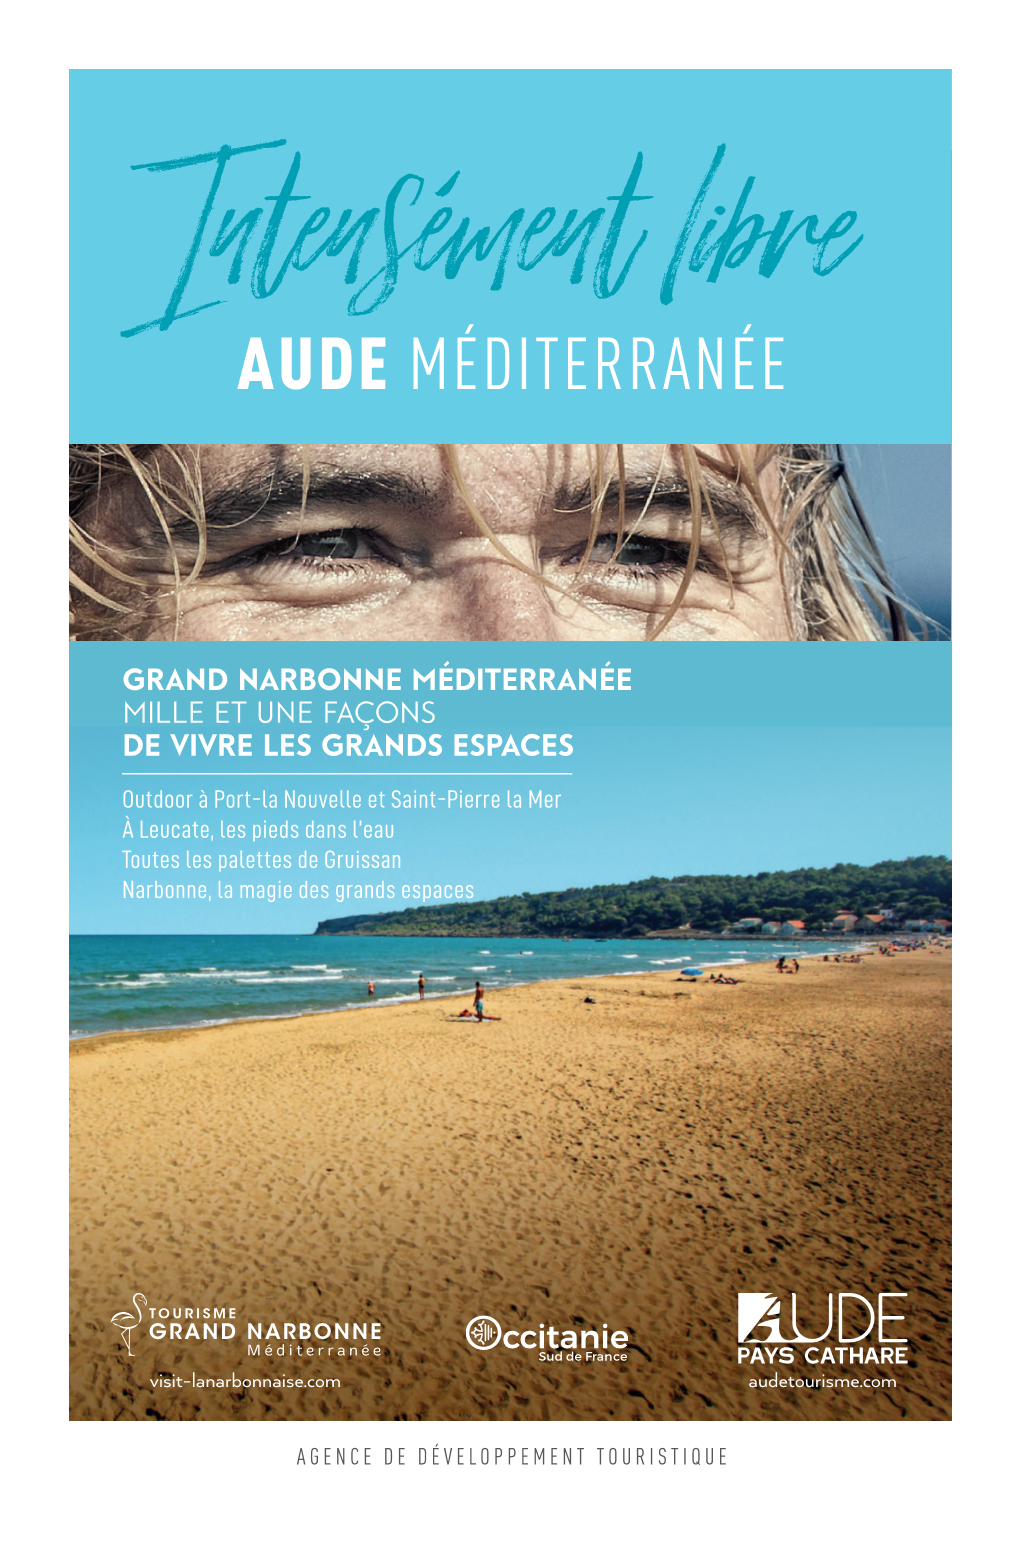 Aude Méditerranée